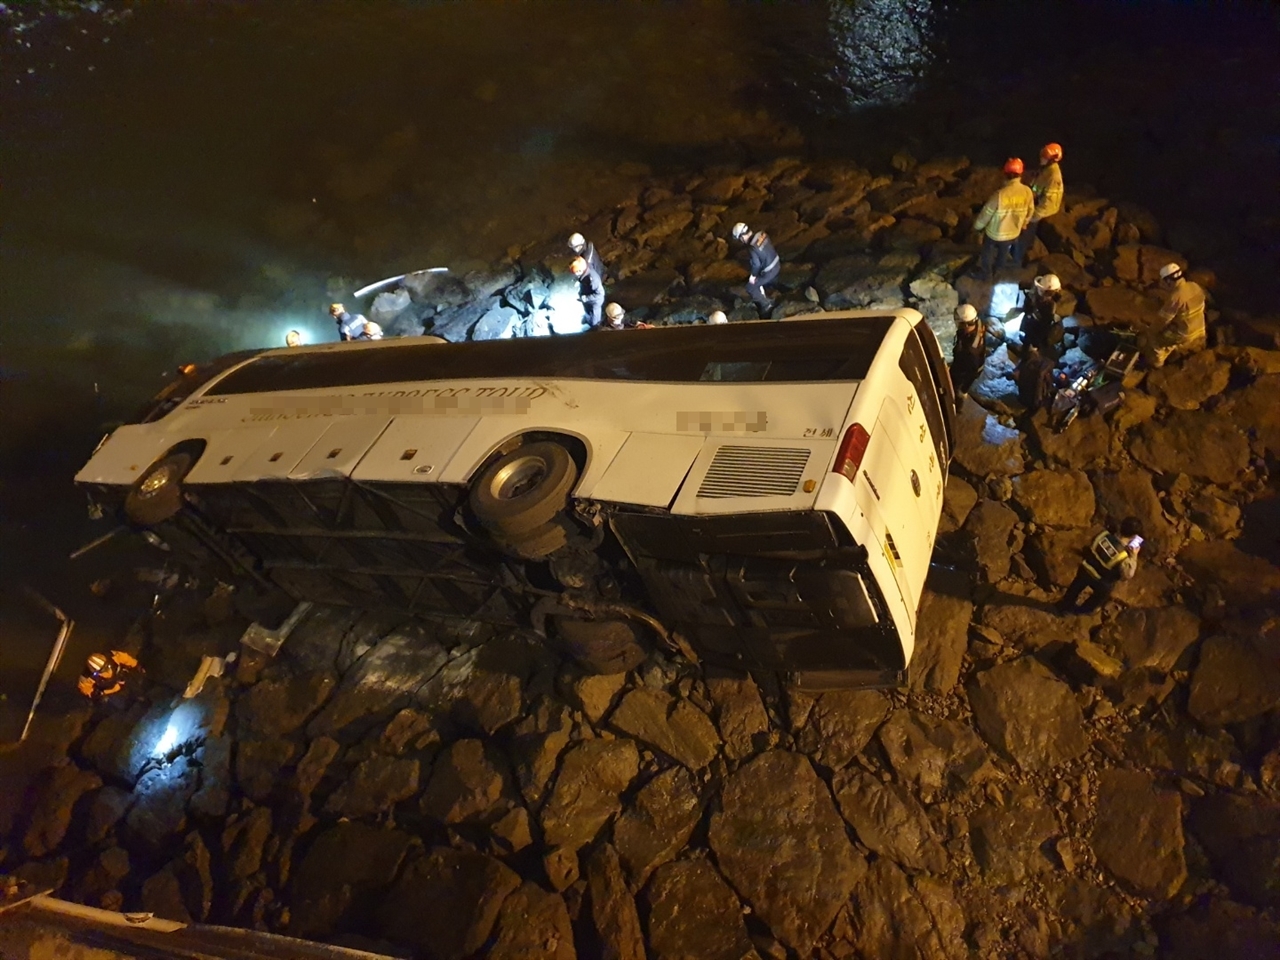 28일 오후 11시 25분 쯤 충남 당진시 송악읍 현대제철 내 바닷물이 들어오는 수로를 횡단하는 다리부근에서 버스가 제방으로 추락해 운전자와 탑승자 등 2명이 숨졌다.